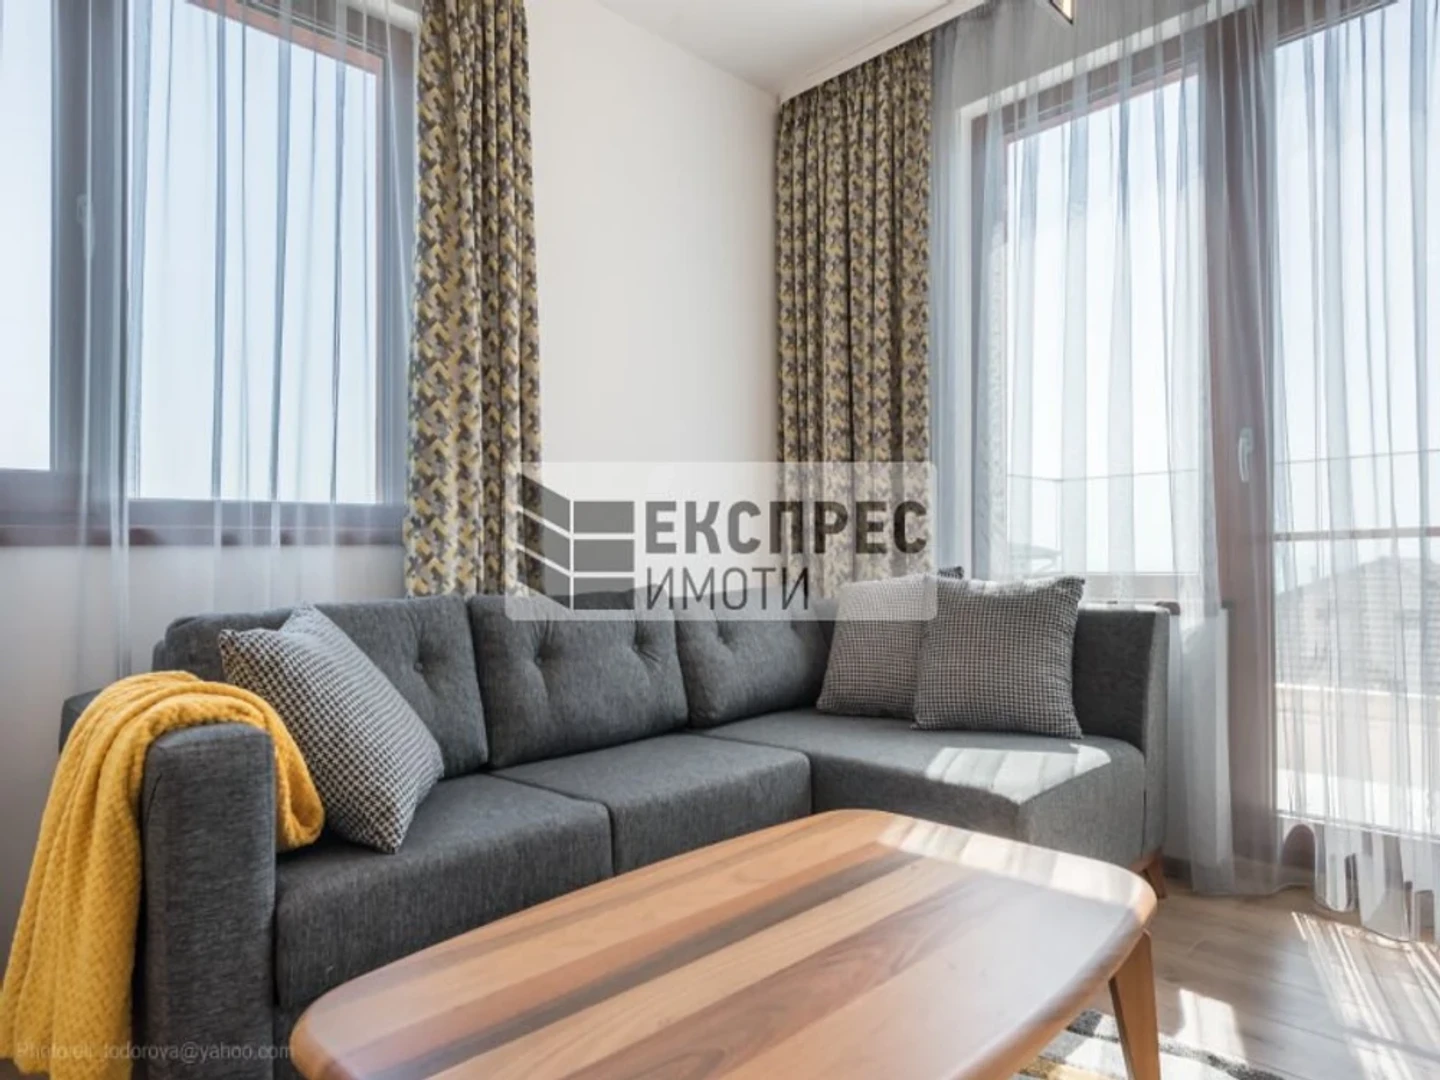 Apartamento moderno e brilhante em Varna